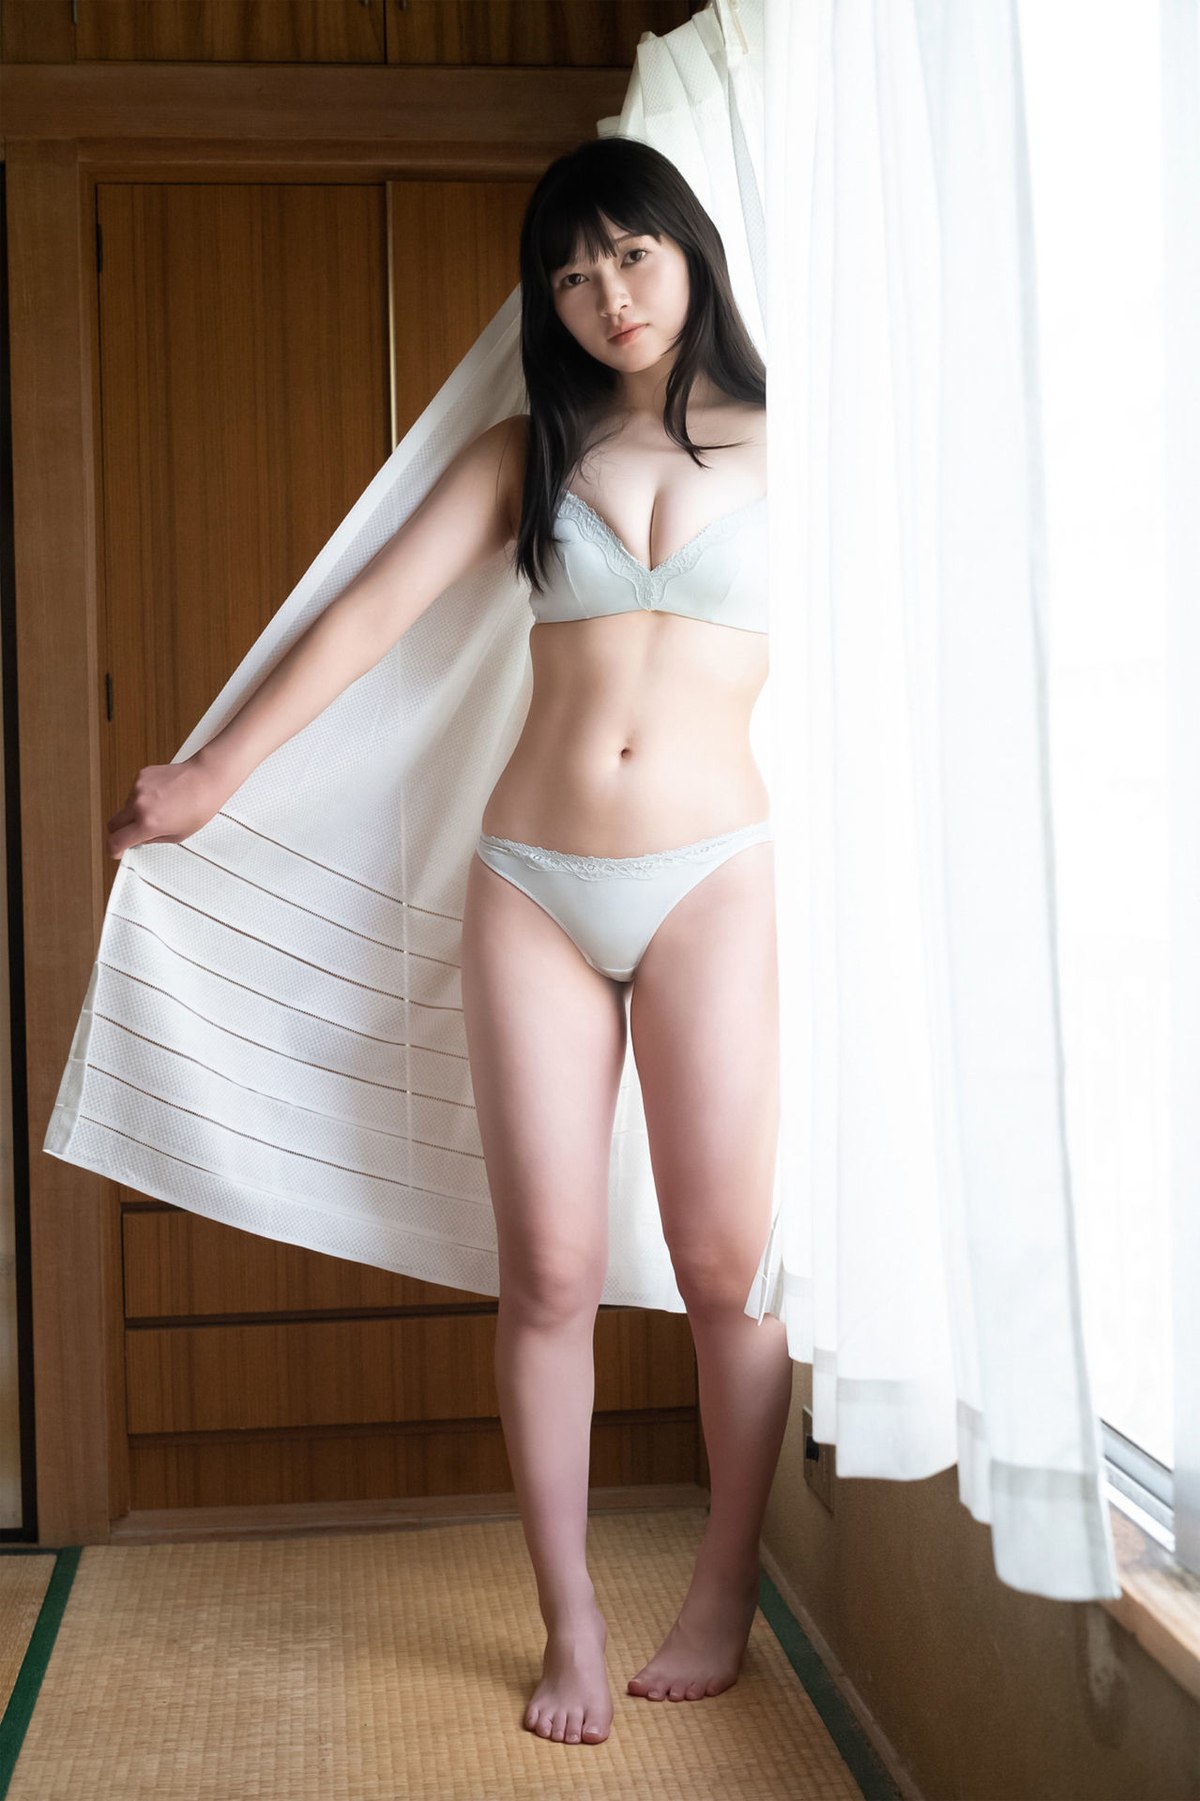 Weekly Gendai Photobook 2023 07 09 Suzuka Sayama 佐山すずか Body Wet In The Shower 0065 8620359144.jpg